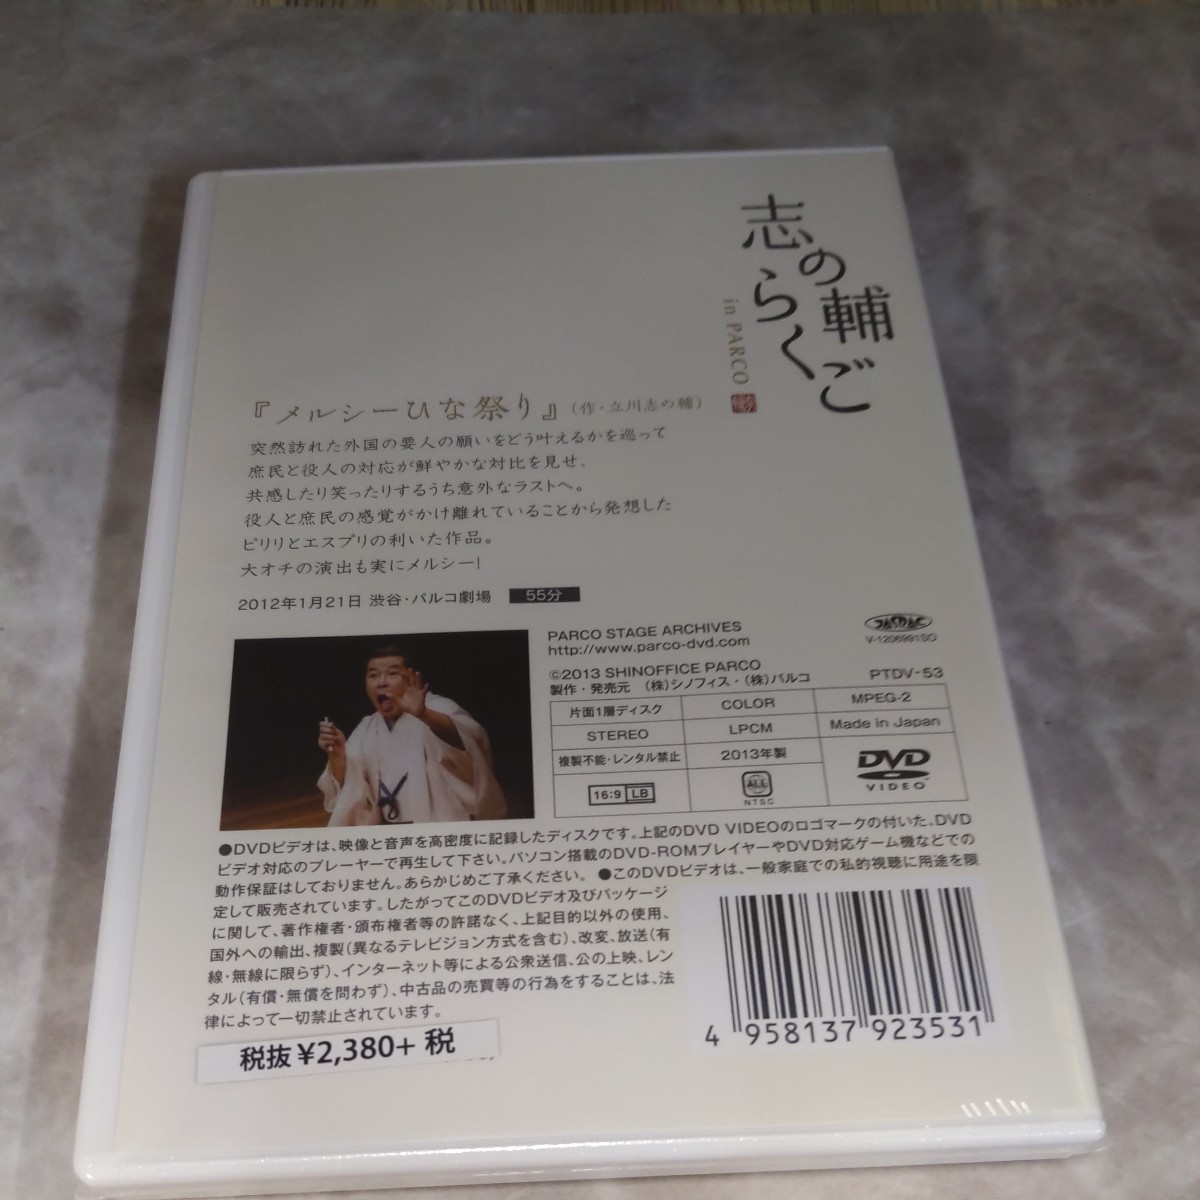 パX213 新品未開封 DVD 志の輔らくご in PARCO 2006-2012 7.メルシーひな祭り 【DVD】_画像2